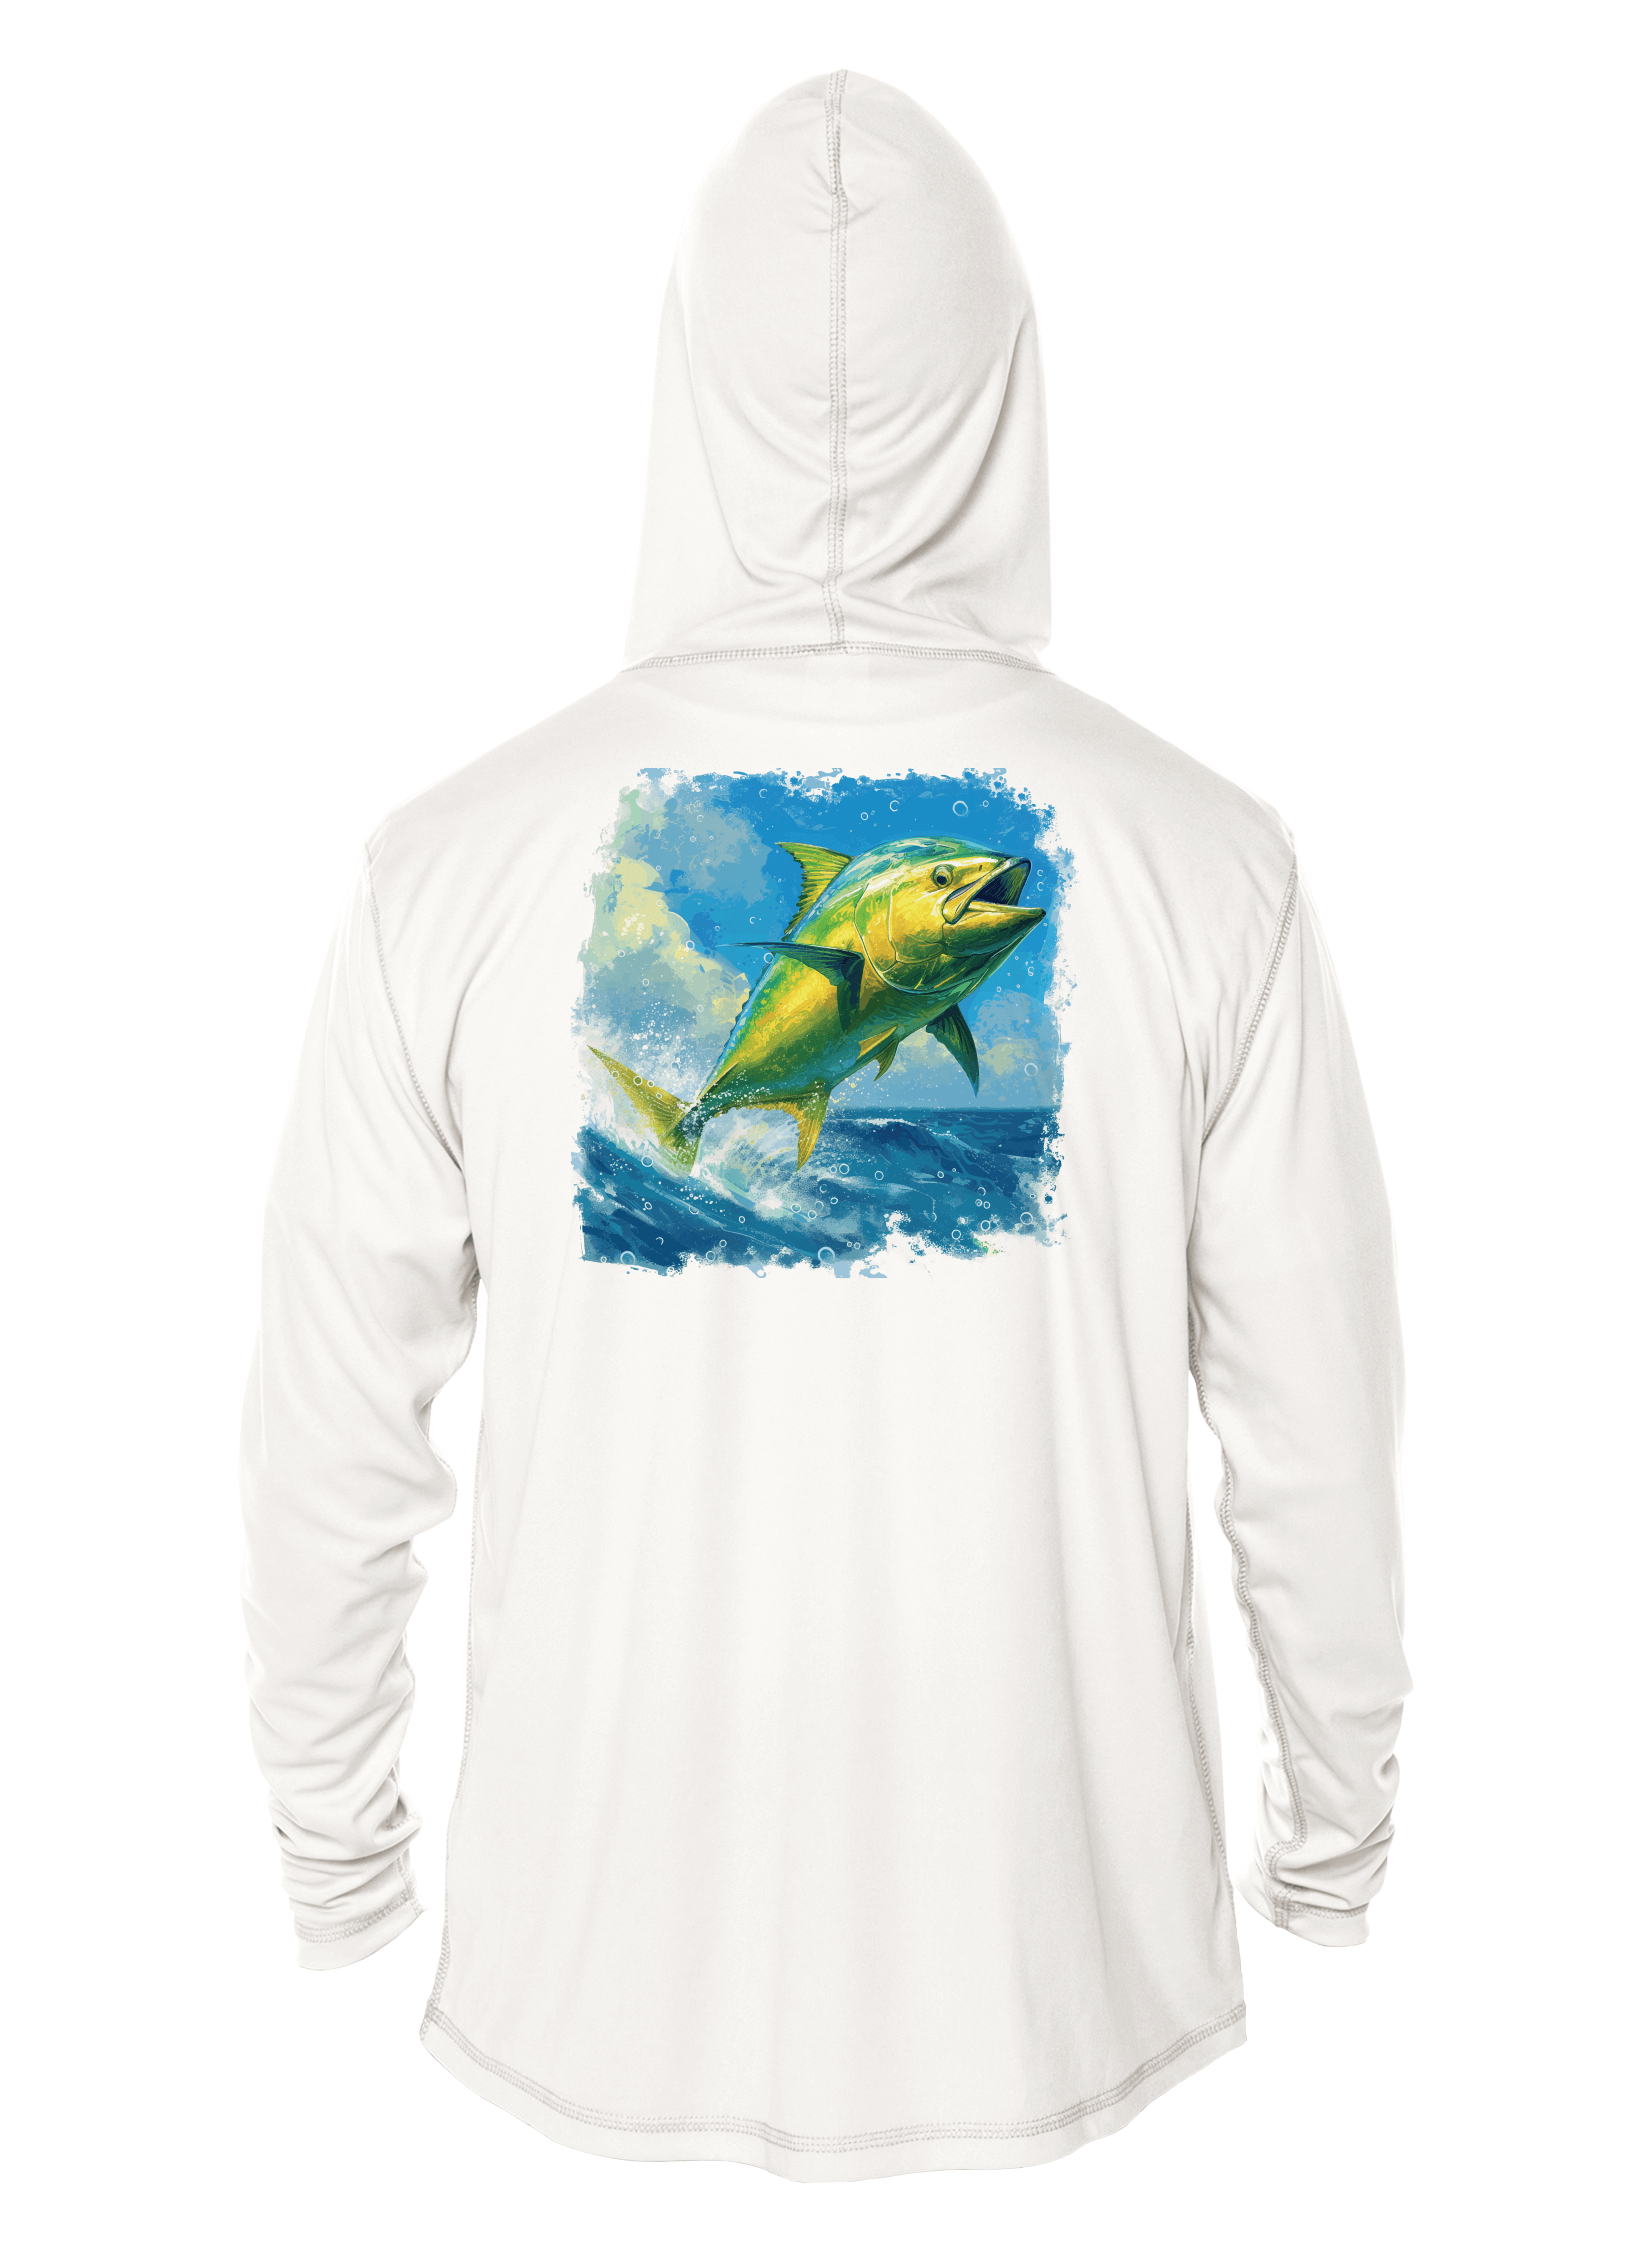 Fishing Shirt Outfitters - Angler's Collection: Mahi-mahi - UPF 50+ Hoodie